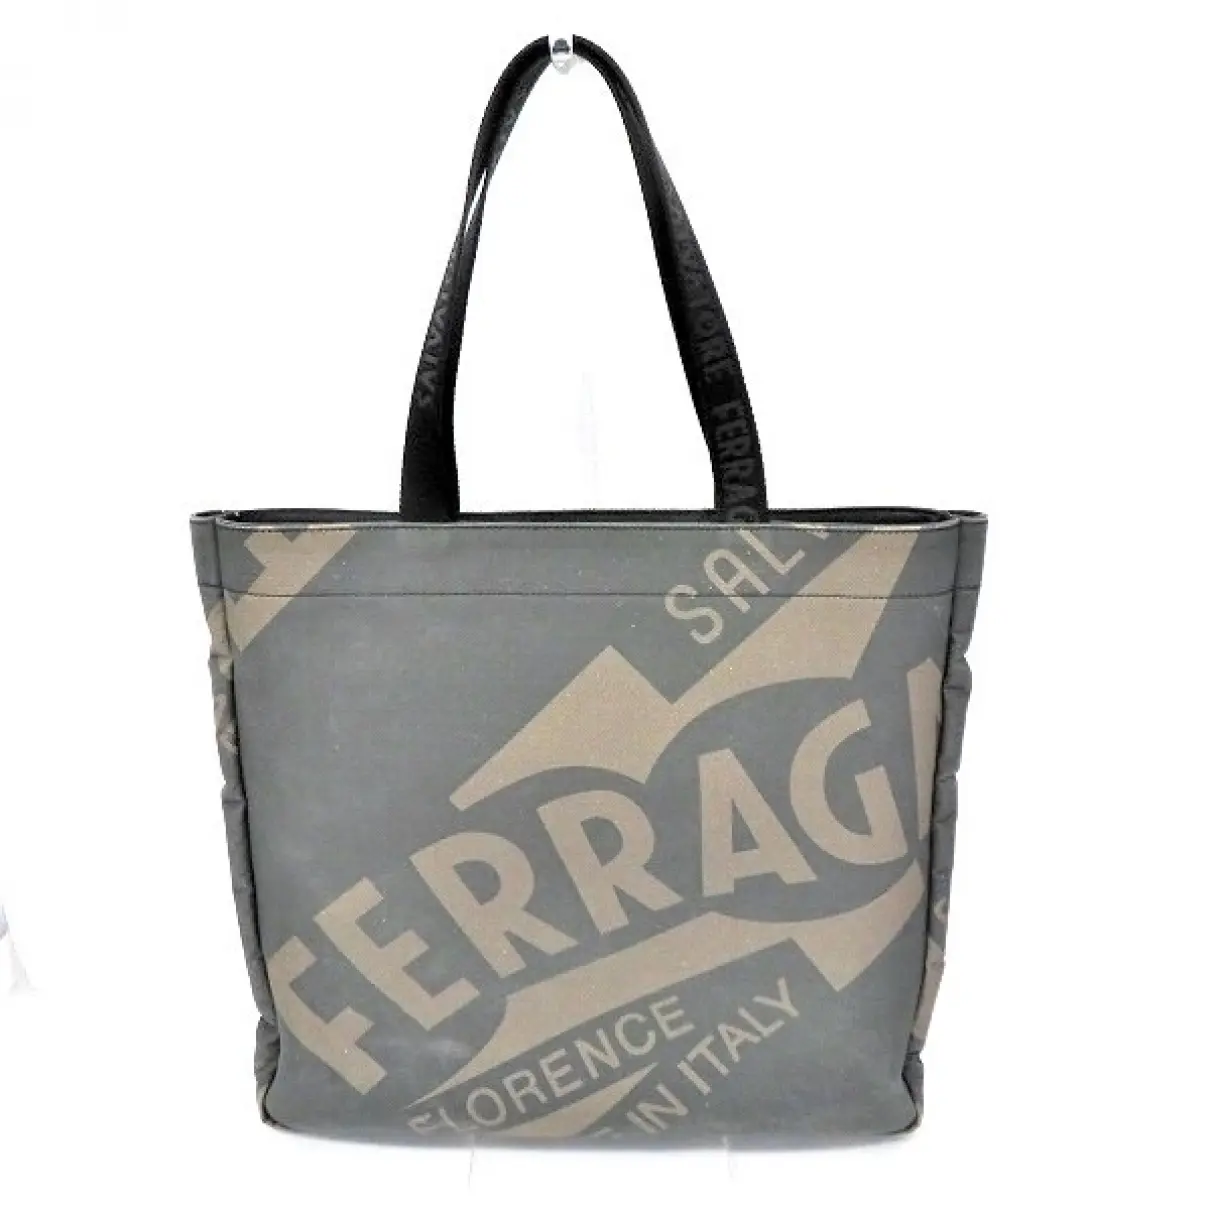 Buy Salvatore Ferragamo Cloth handbag online